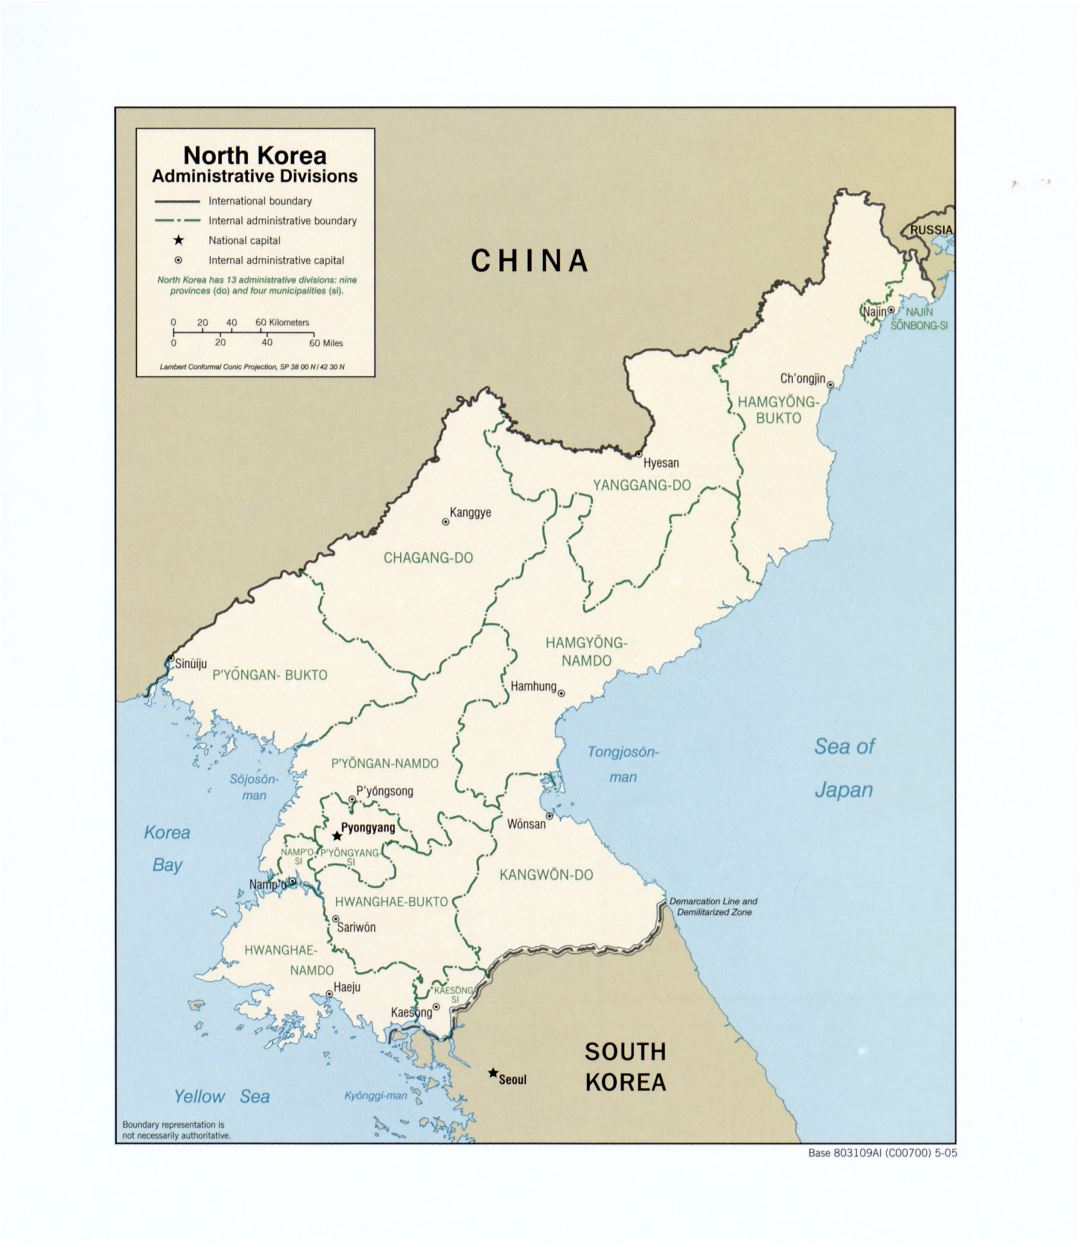 Grande detallado mapa de administrativas divisiones de Corea del Norte - 2005